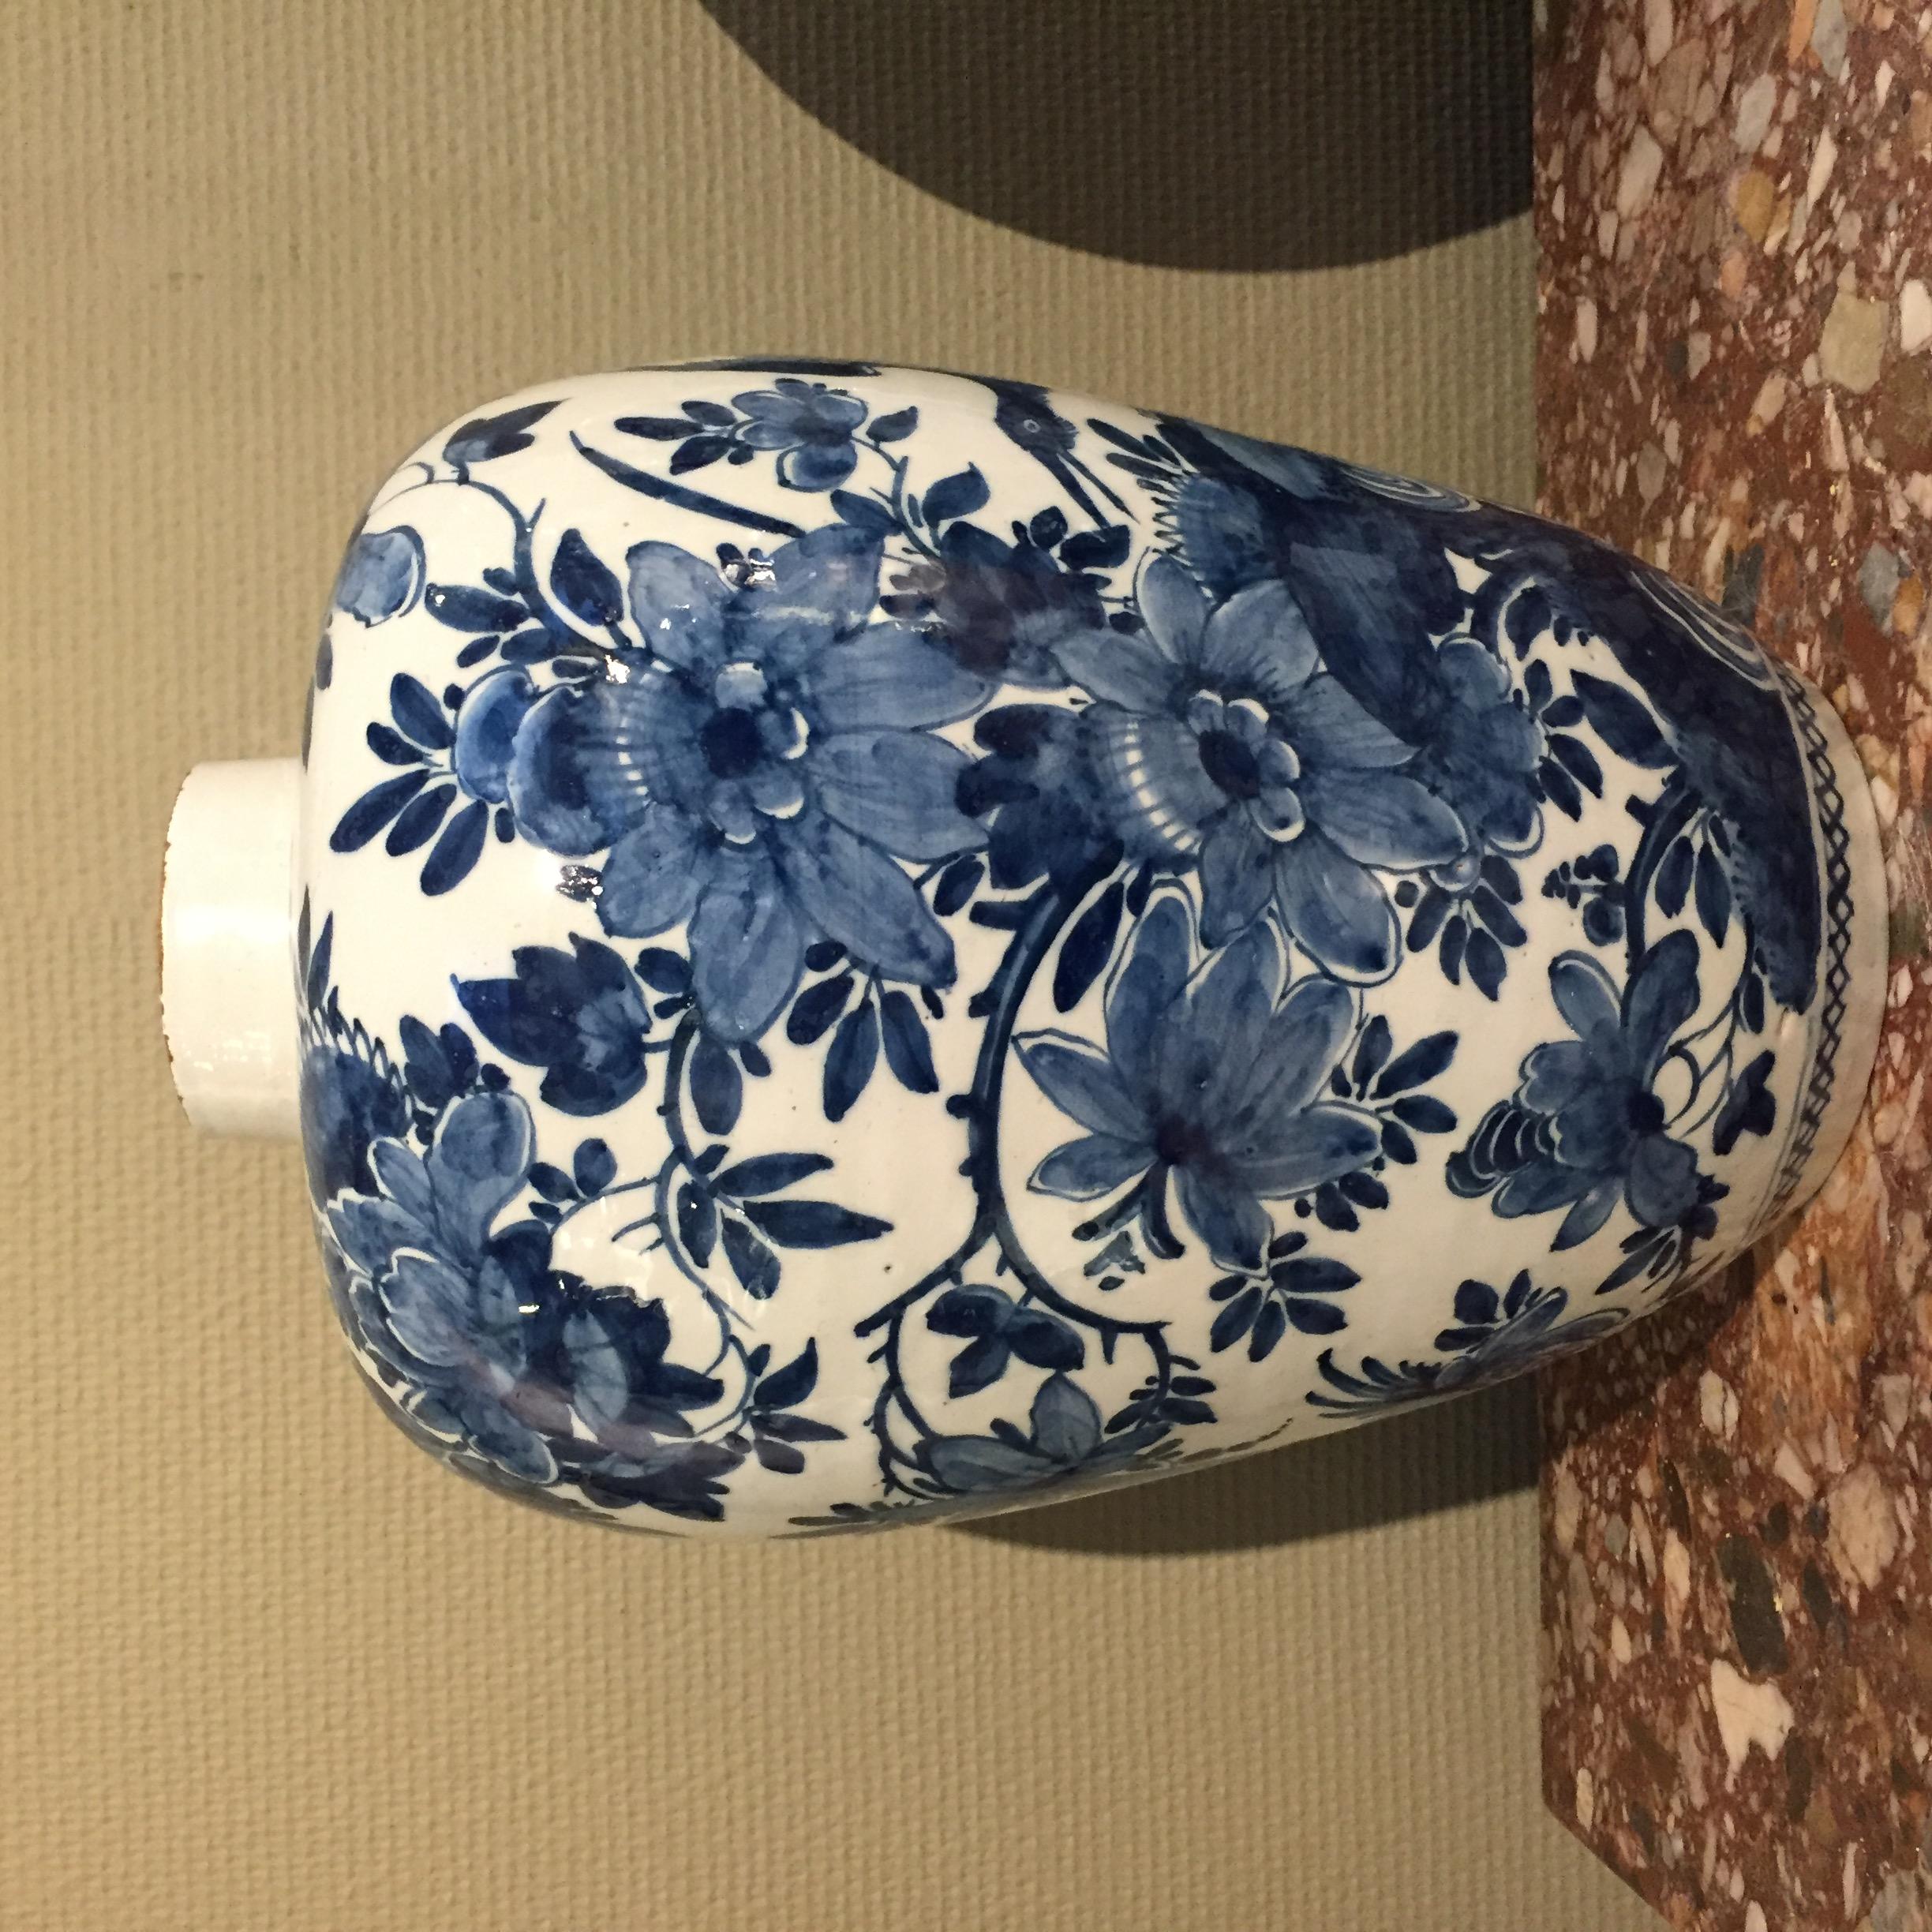 Ceramic 18th century Dutch Delft vase with Bird of Paradise